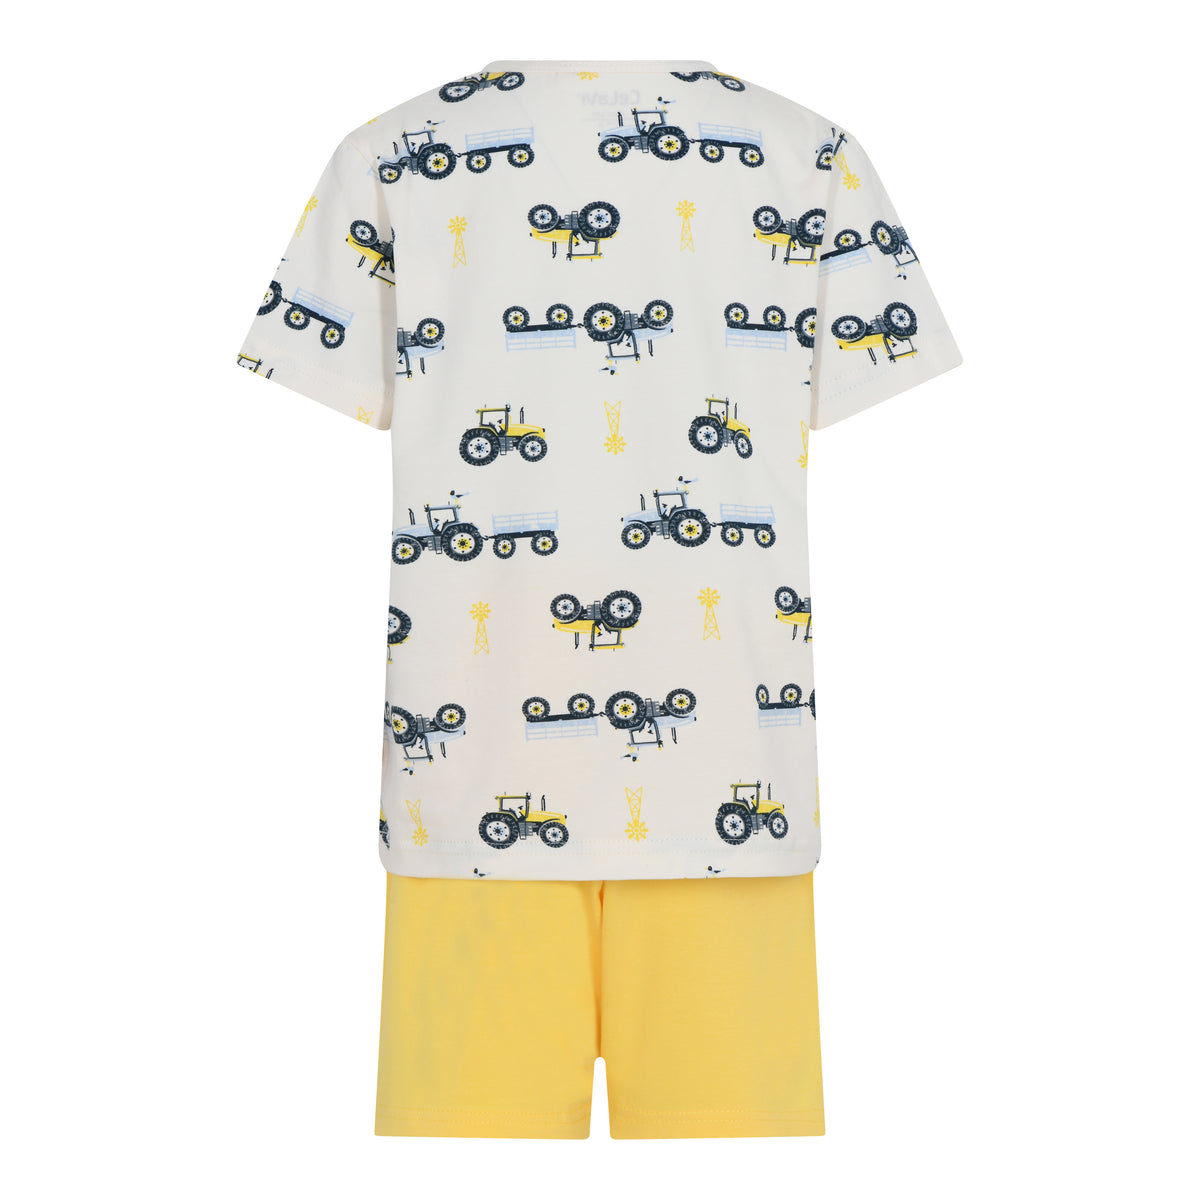 Cooler Sommer-Pyjama mit Traktoren! Weicher Schlafanzug für ein angenehmes Tragegefühl, Einfaches An- und Ausziehen, auch über die Windel dank elastischem Material  Material: 95% Baumwolle, 5% Elasthan  Pflege: 40 Grad, schontrocknen